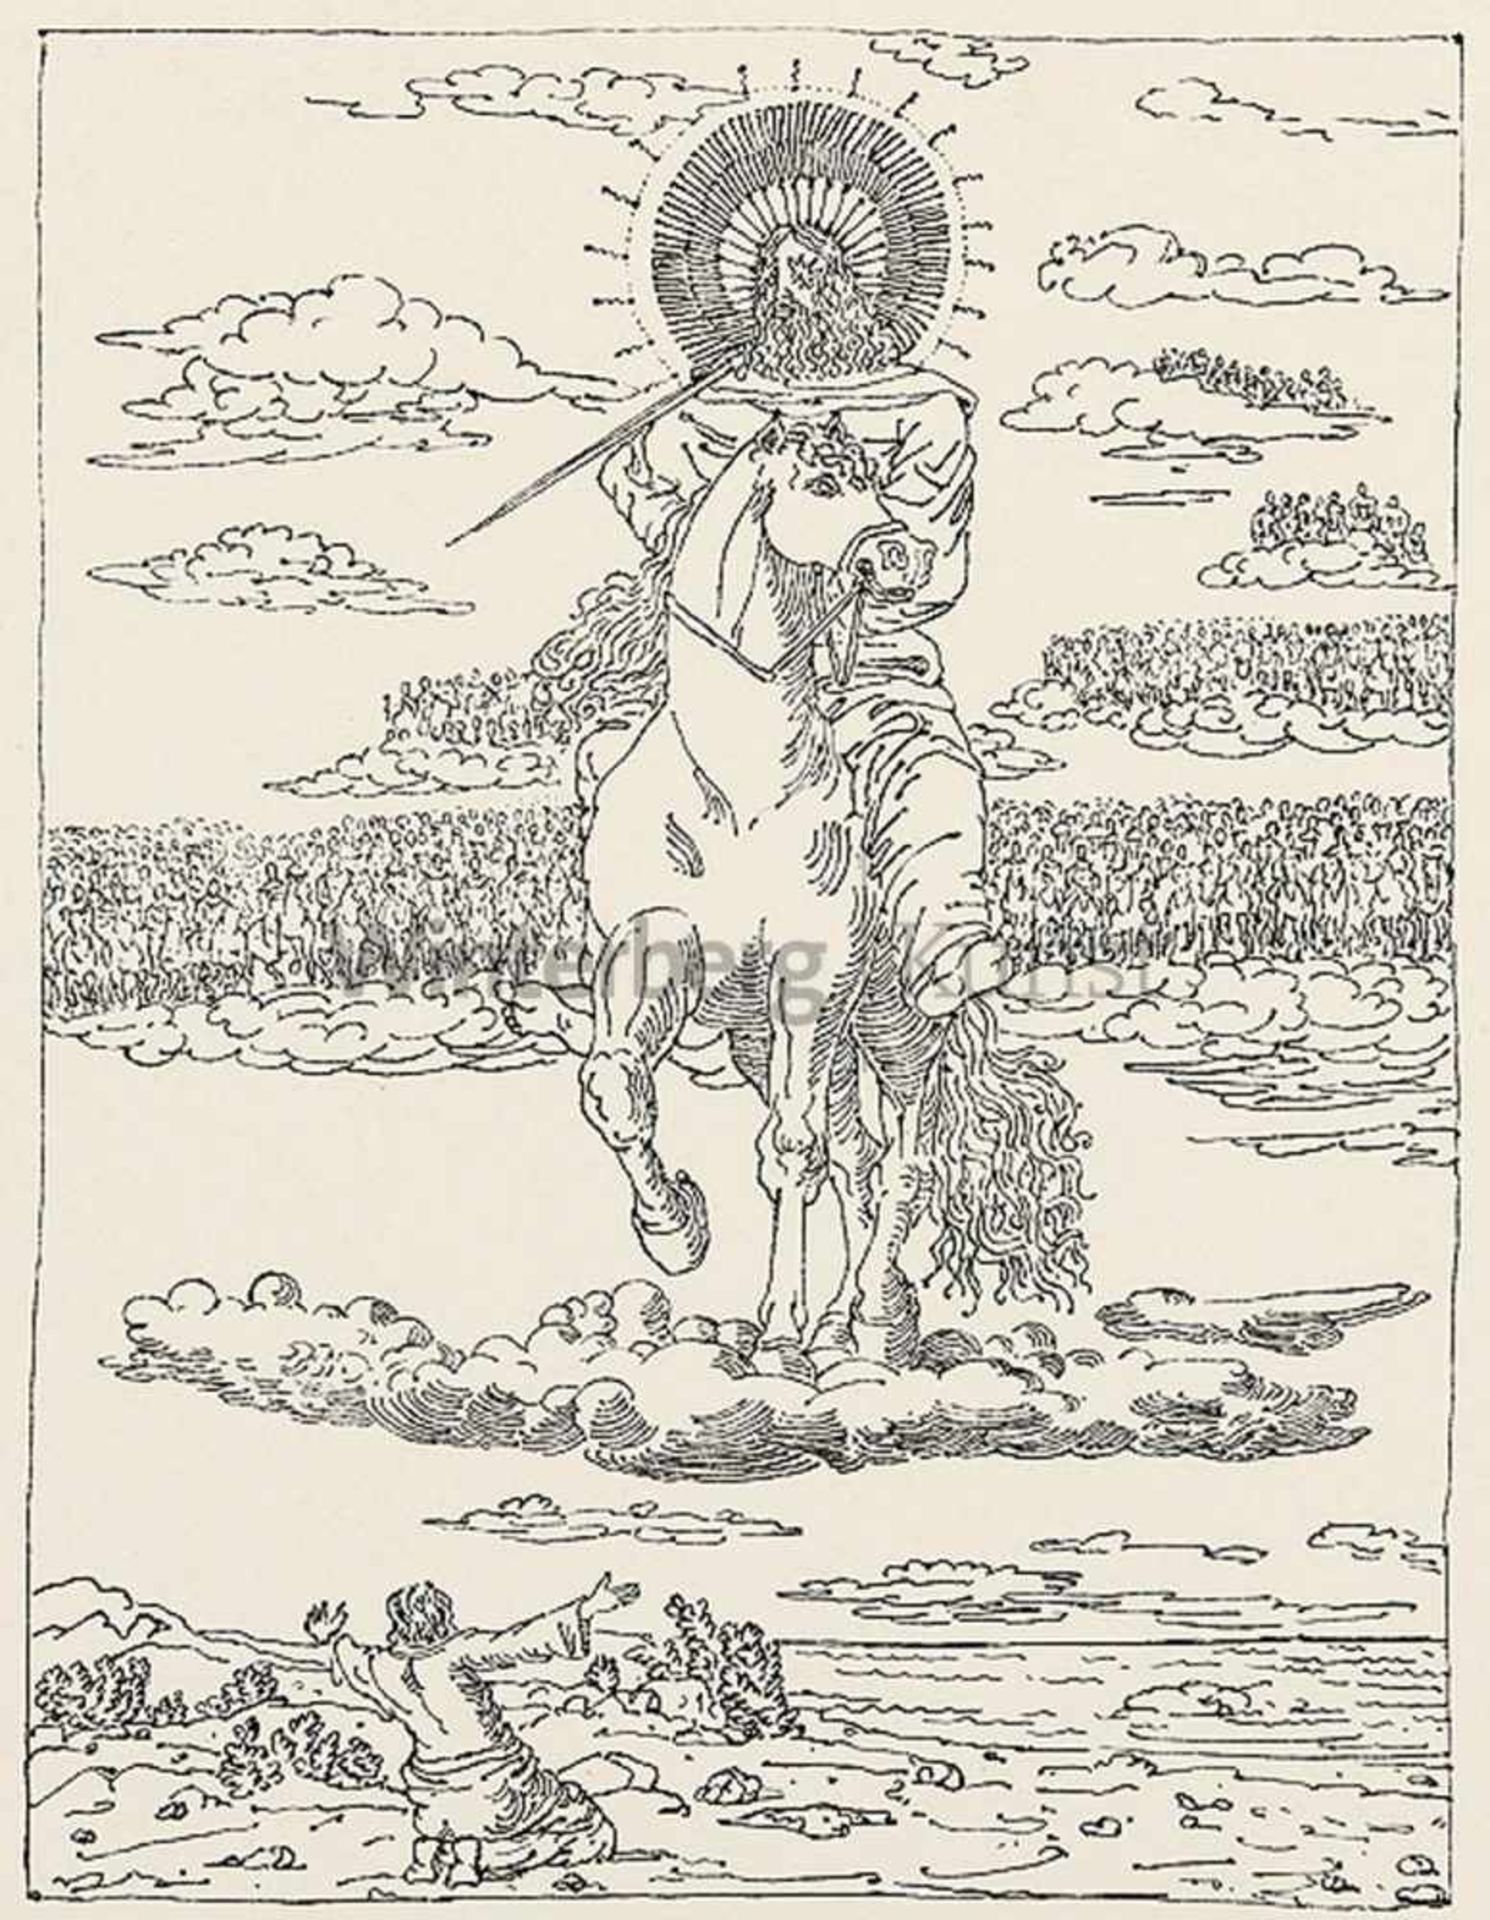 GIORGIO DE CHIRICO Volo/Griechenland 1888 - 1978 Rom...ed ecco un Cavallo bianco... Erscheinung.